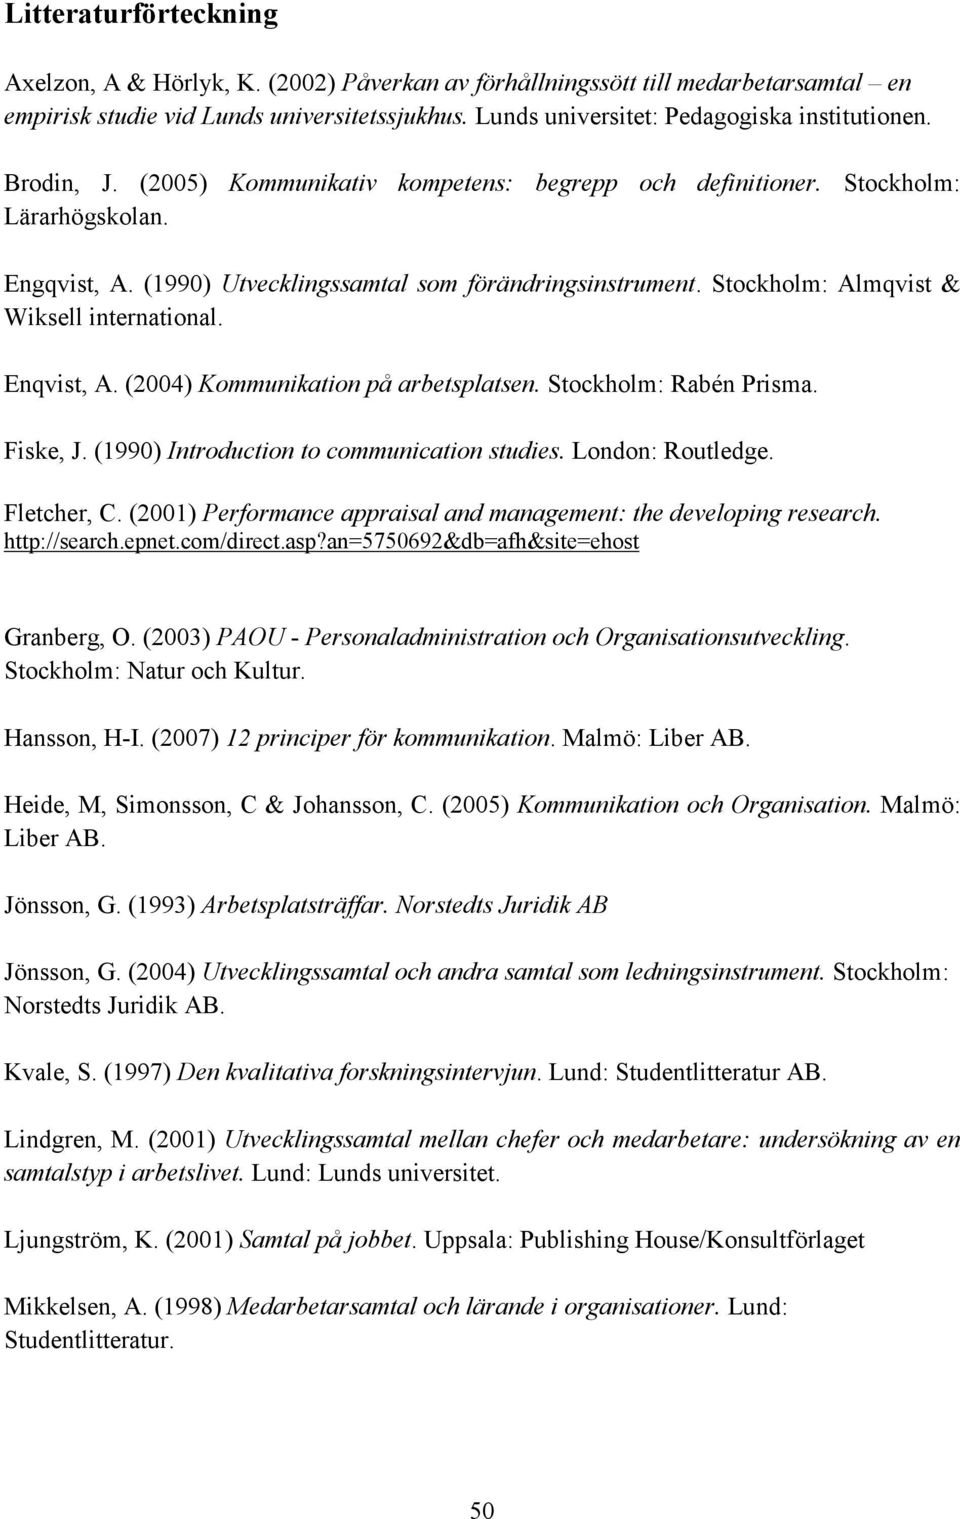 Stockholm: Almqvist & Wiksell international. Enqvist, A. (2004) Kommunikation på arbetsplatsen. Stockholm: Rabén Prisma. Fiske, J. (1990) Introduction to communication studies. London: Routledge.